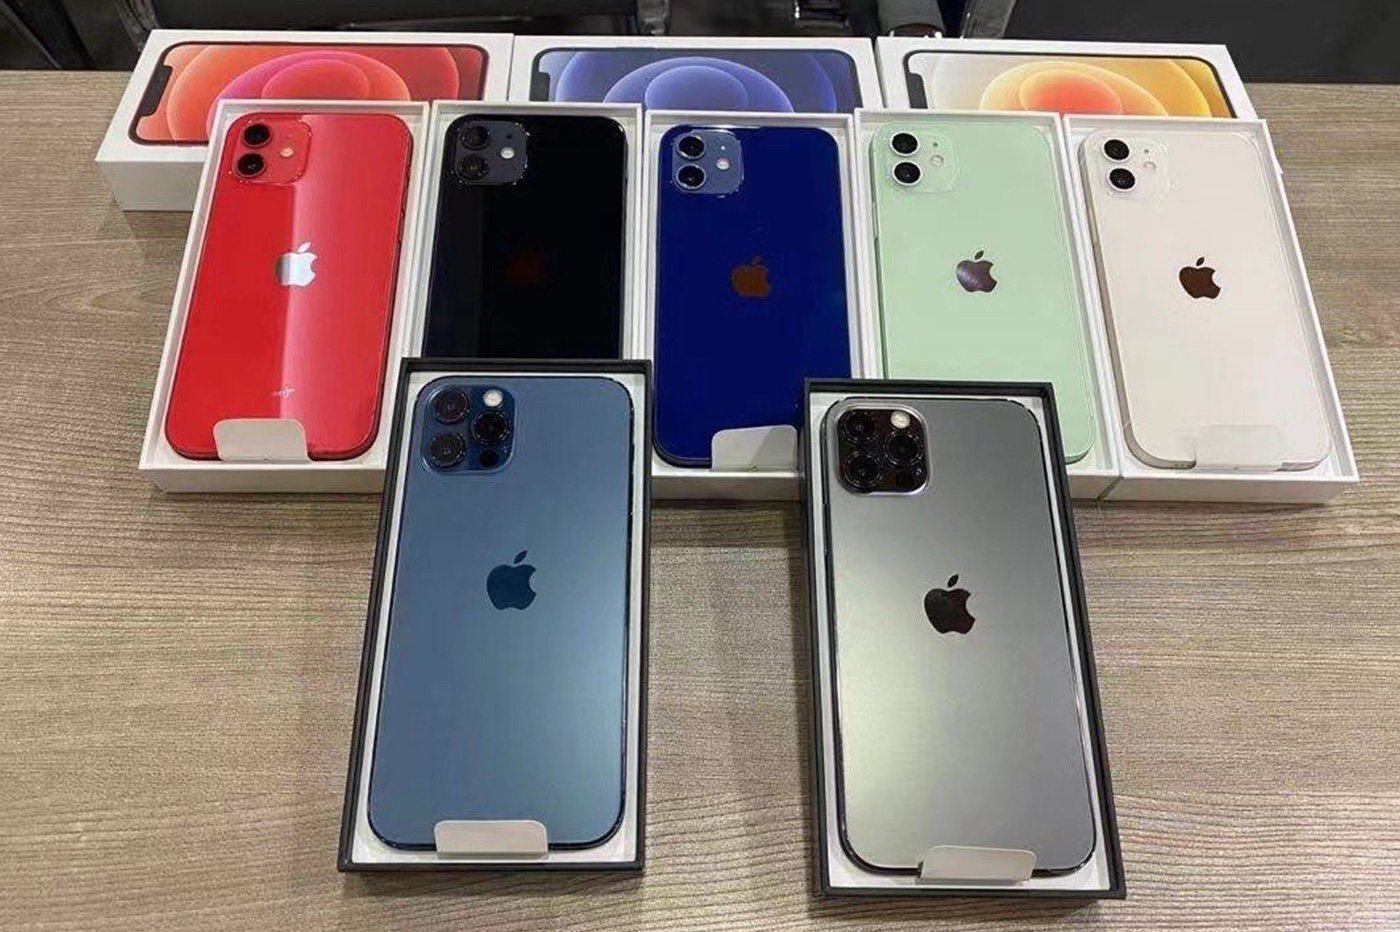 Купить 12 айфон в москве оригинал новый. Айфон 12 цвета. Iphone 12 Pro 128. Iphone 12 цвета корпуса. Iphone 12 расцветки.